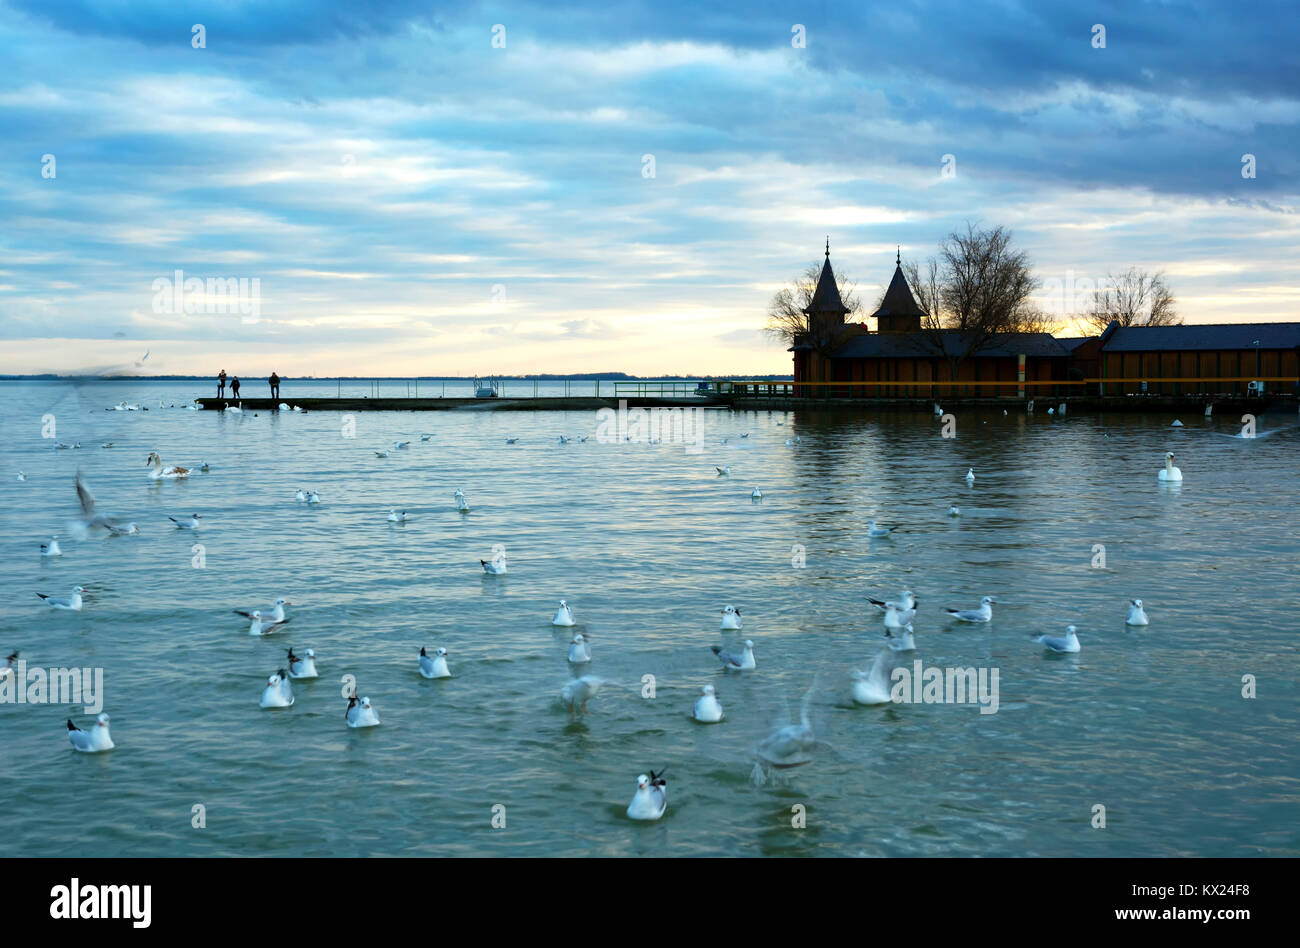 Birds at Lake Balaton, Hungary Stock Photo - Alamy